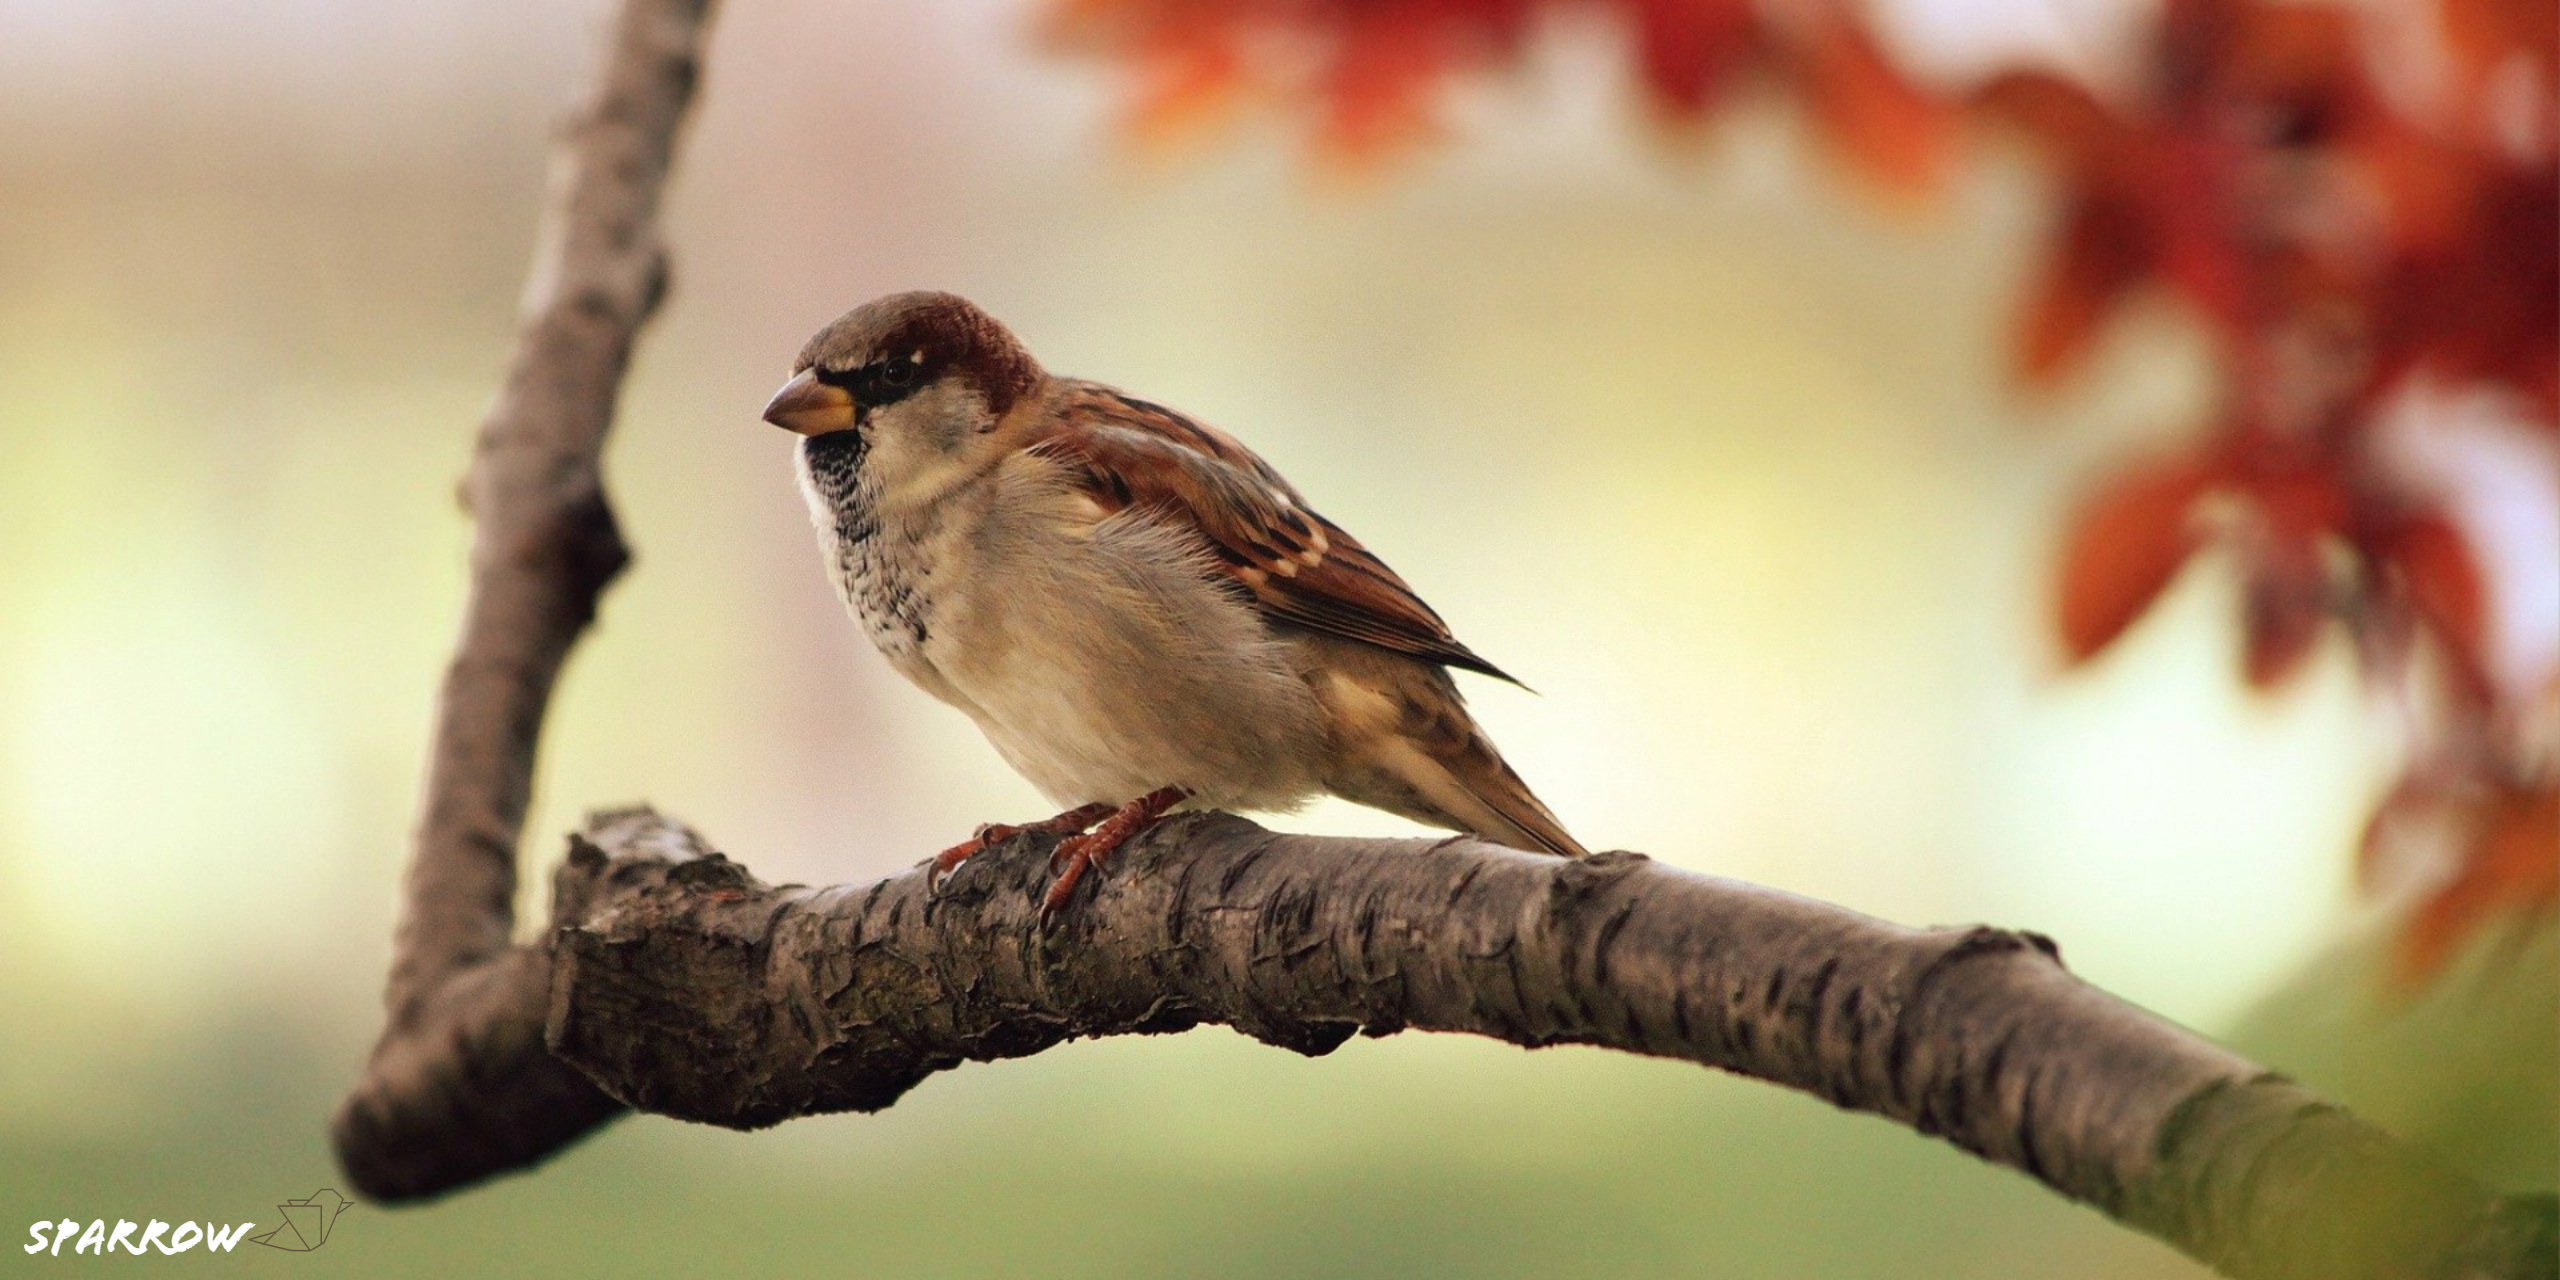 HD sparrow, Bird's portrait, Close-up shot, Stunning wallpaper, 2560x1280 Dual Screen Desktop